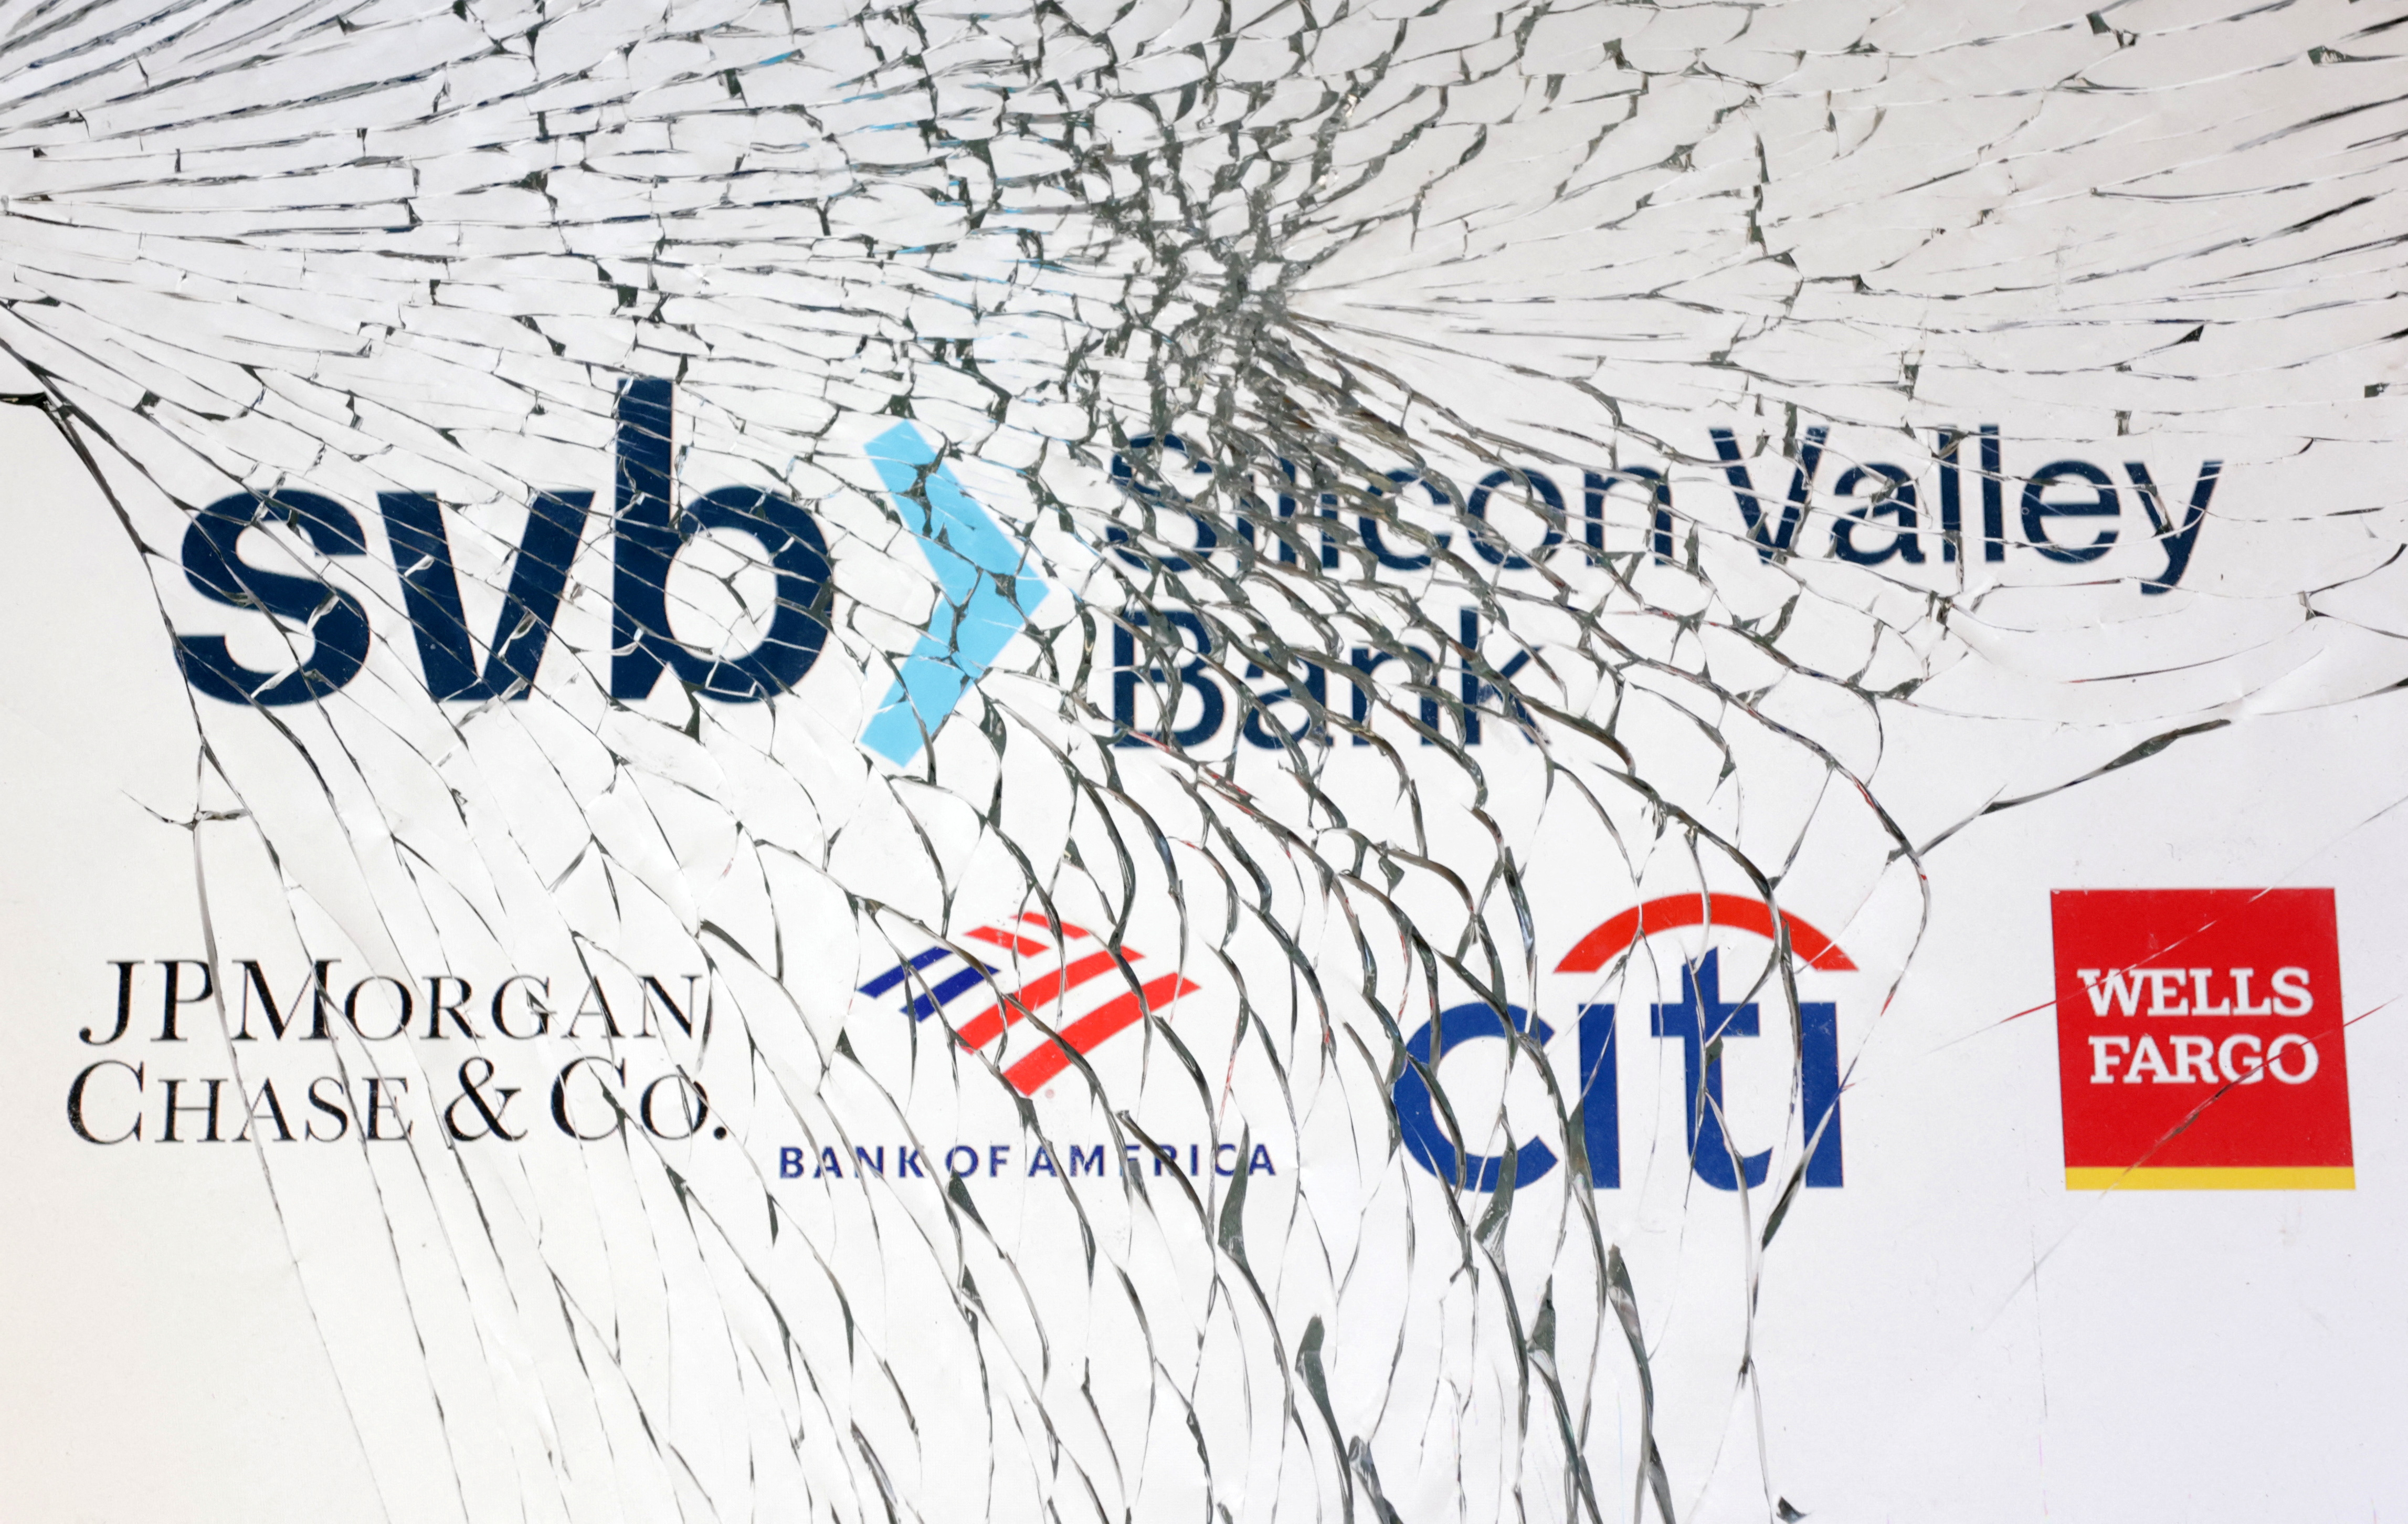  SVB (Silicon Valley Bank), JP Morgan, Bank of America, Citibank and Wells Fargo logos